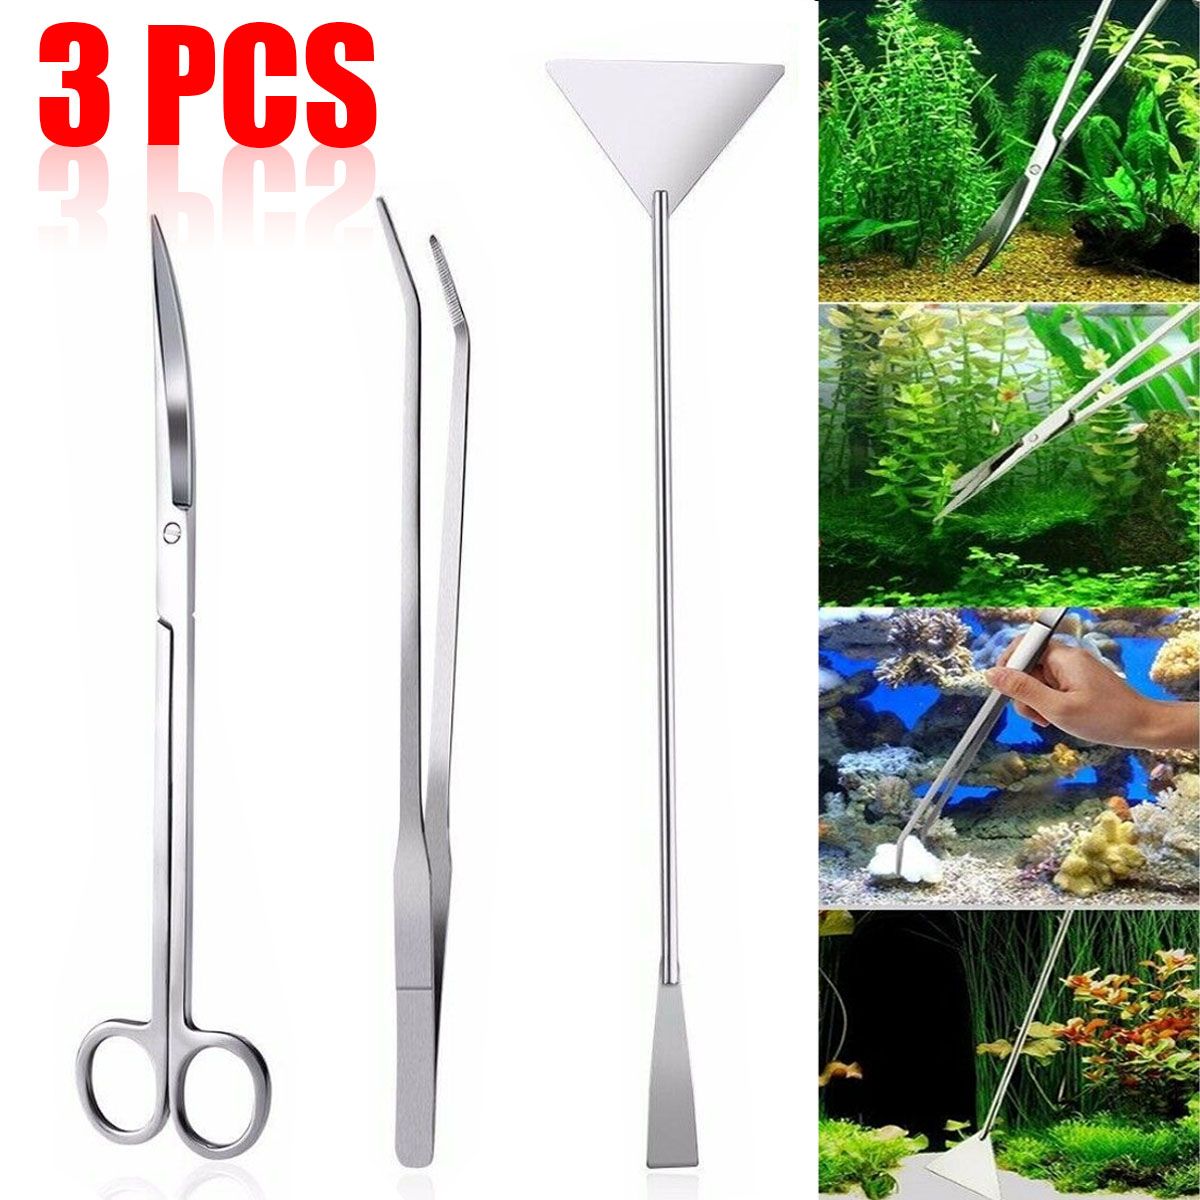 345Pcs-Aquarium-Fish-Tank-Tools-Scissors-Tweezers-Aquatic-Stainless-Trim-Tool-1669408